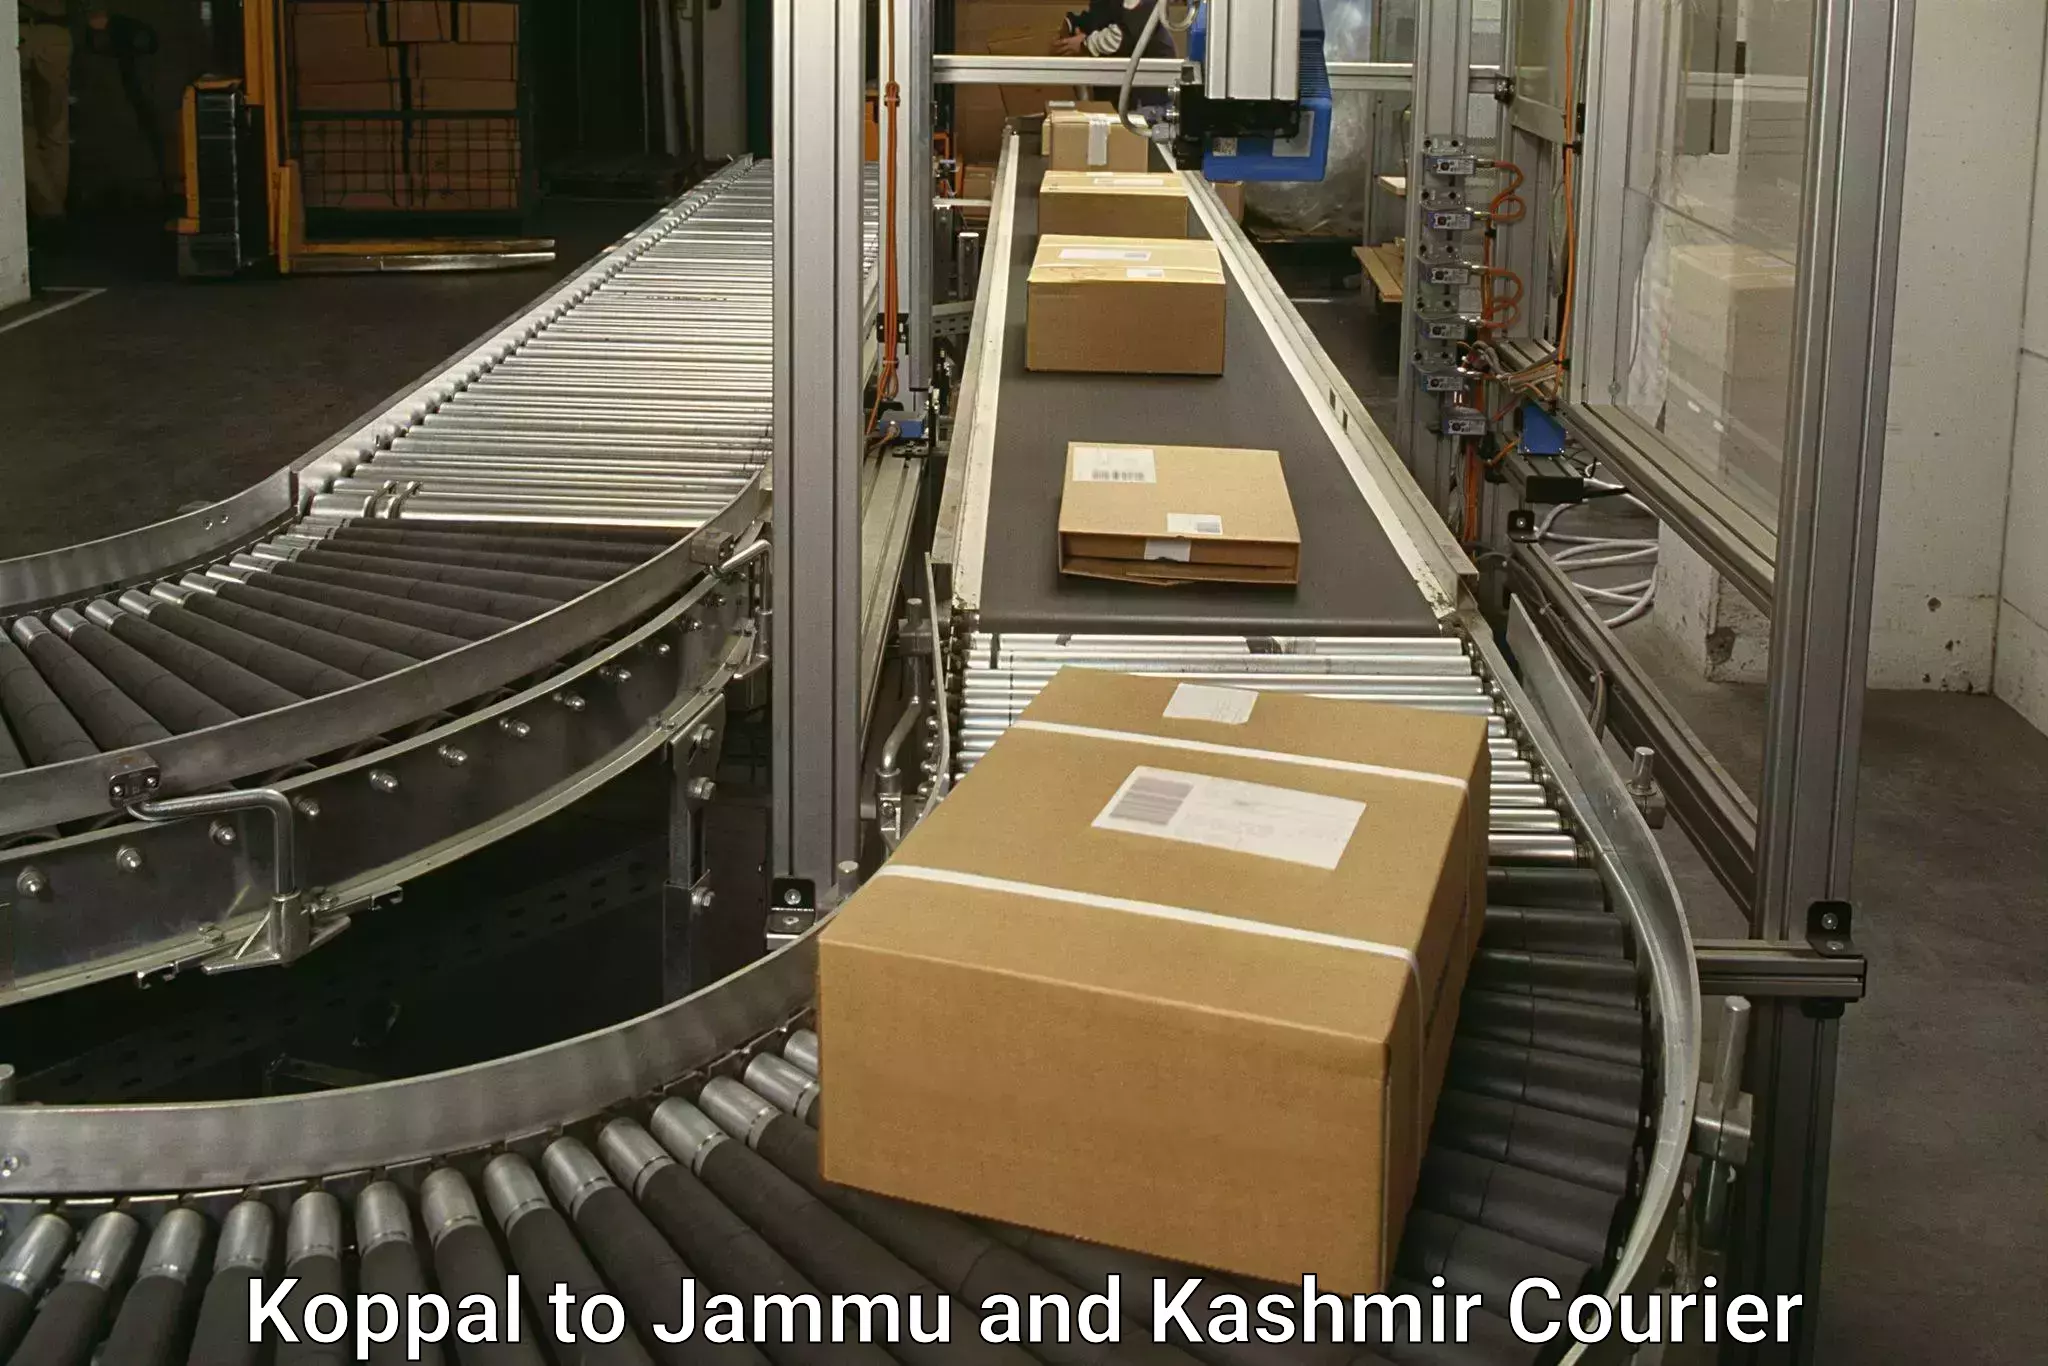 Sustainable shipping practices Koppal to Kishtwar